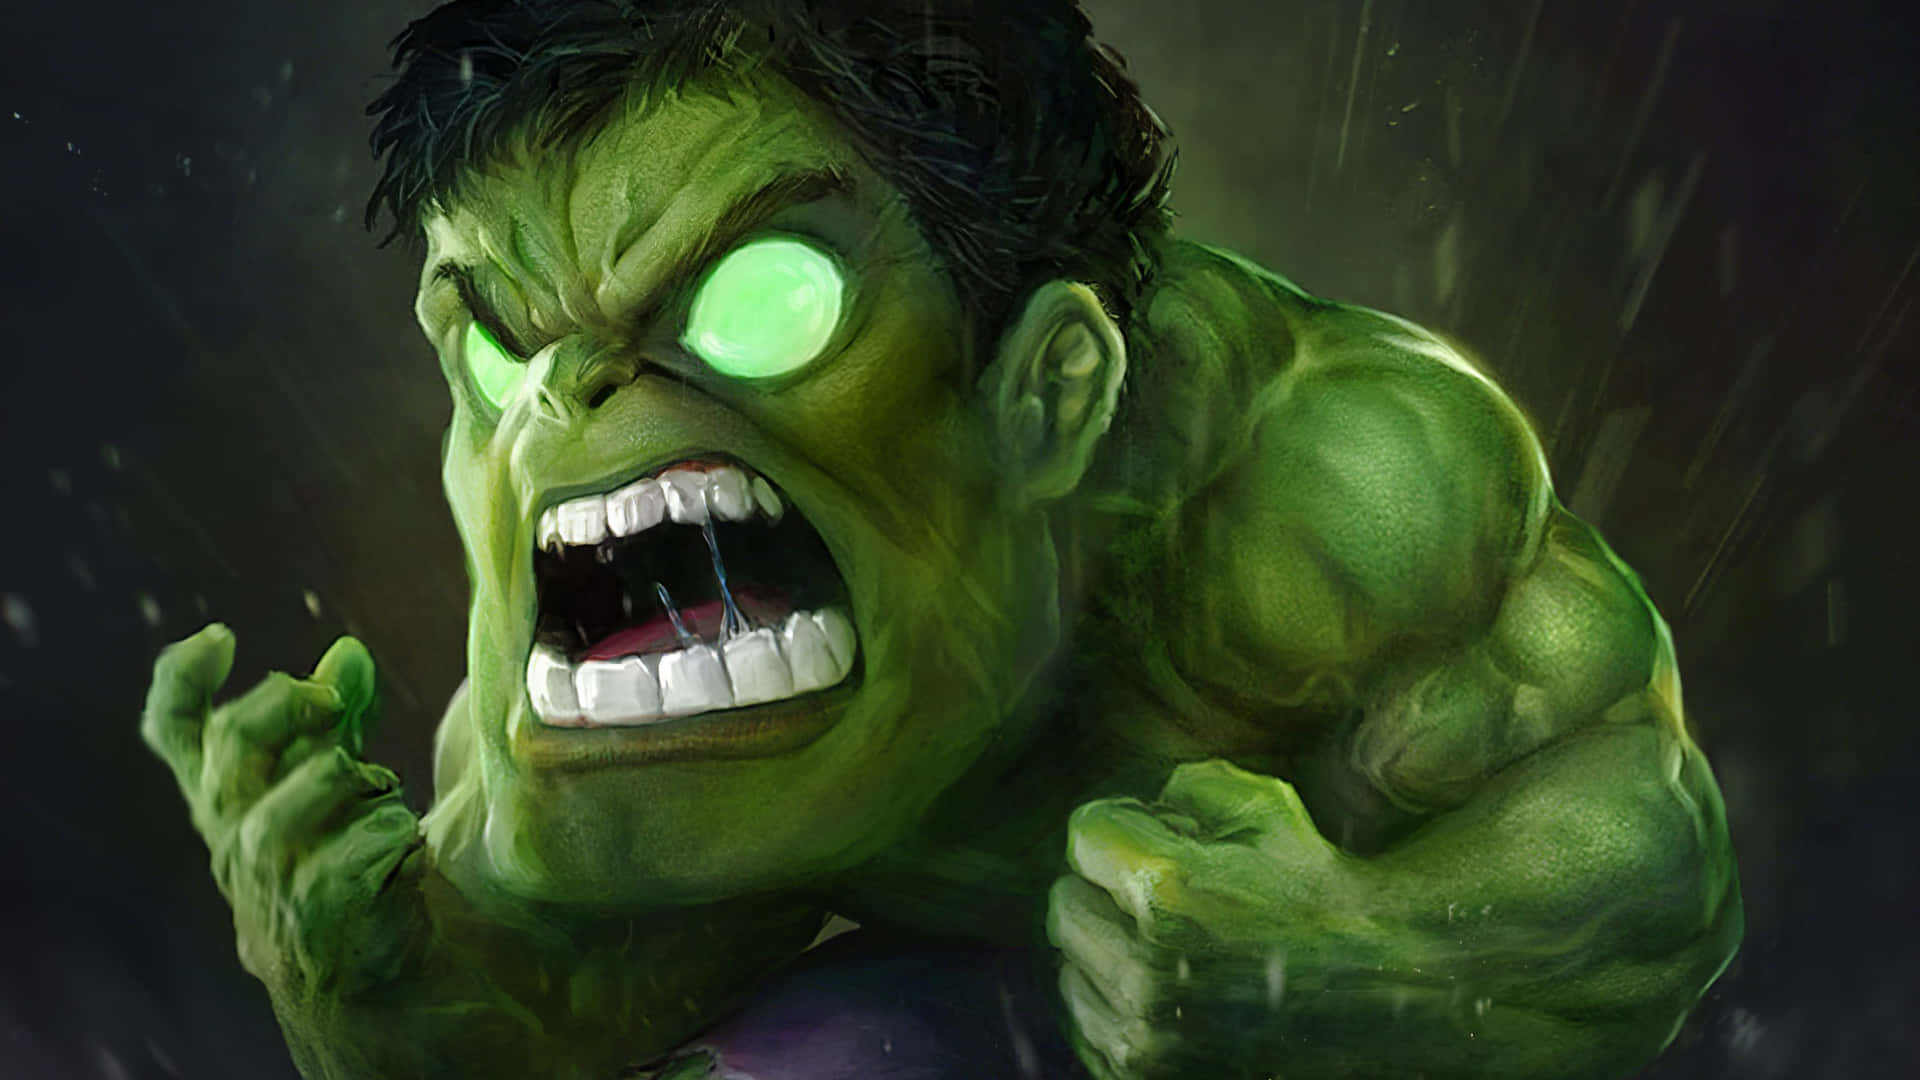 Oincrível Hulk!